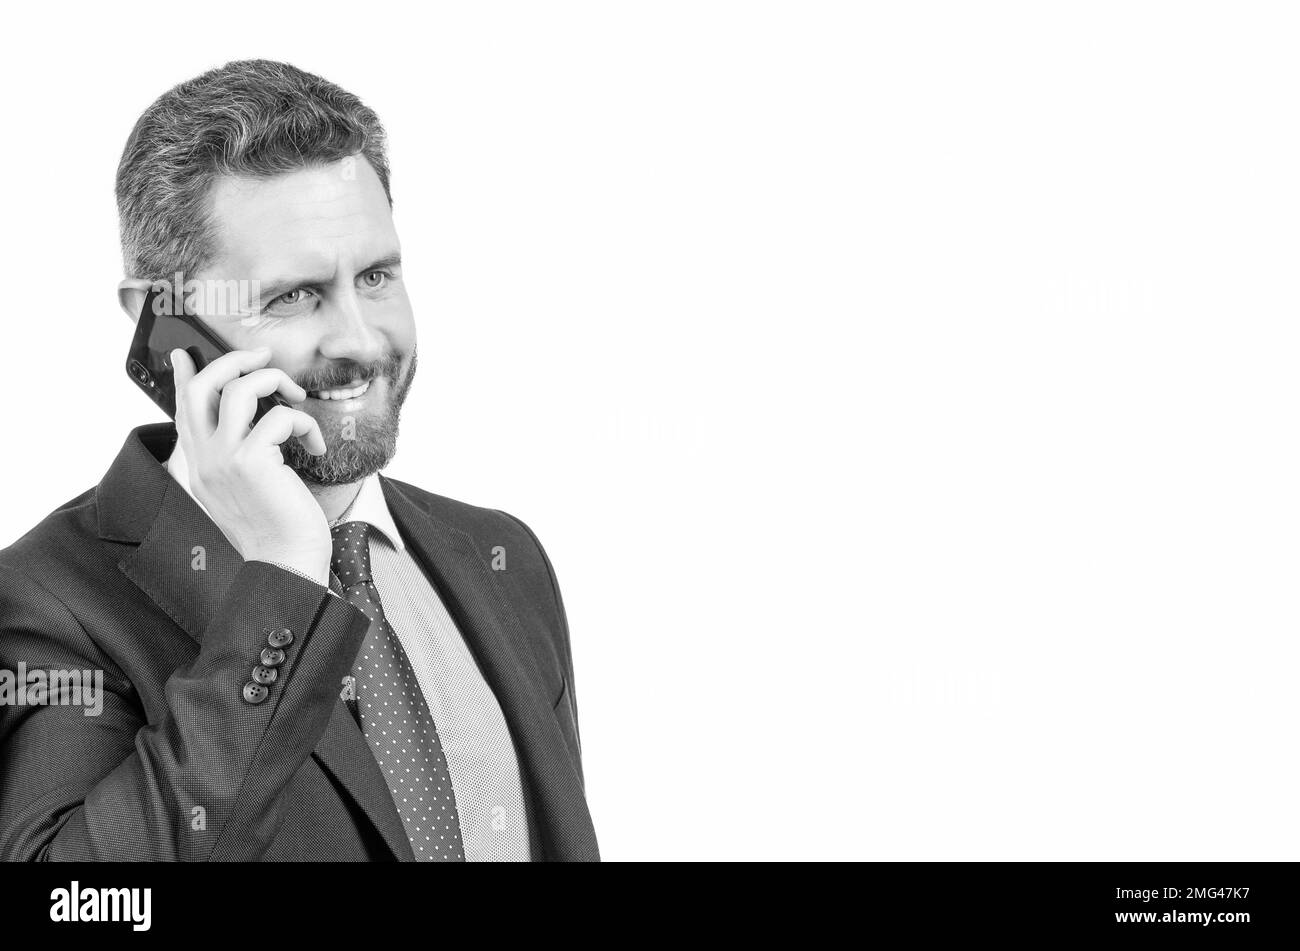 Communication mobile. Un homme heureux parle sur un téléphone portable. Les hommes d'affaires utilisent le téléphone portable dans leurs affaires Banque D'Images